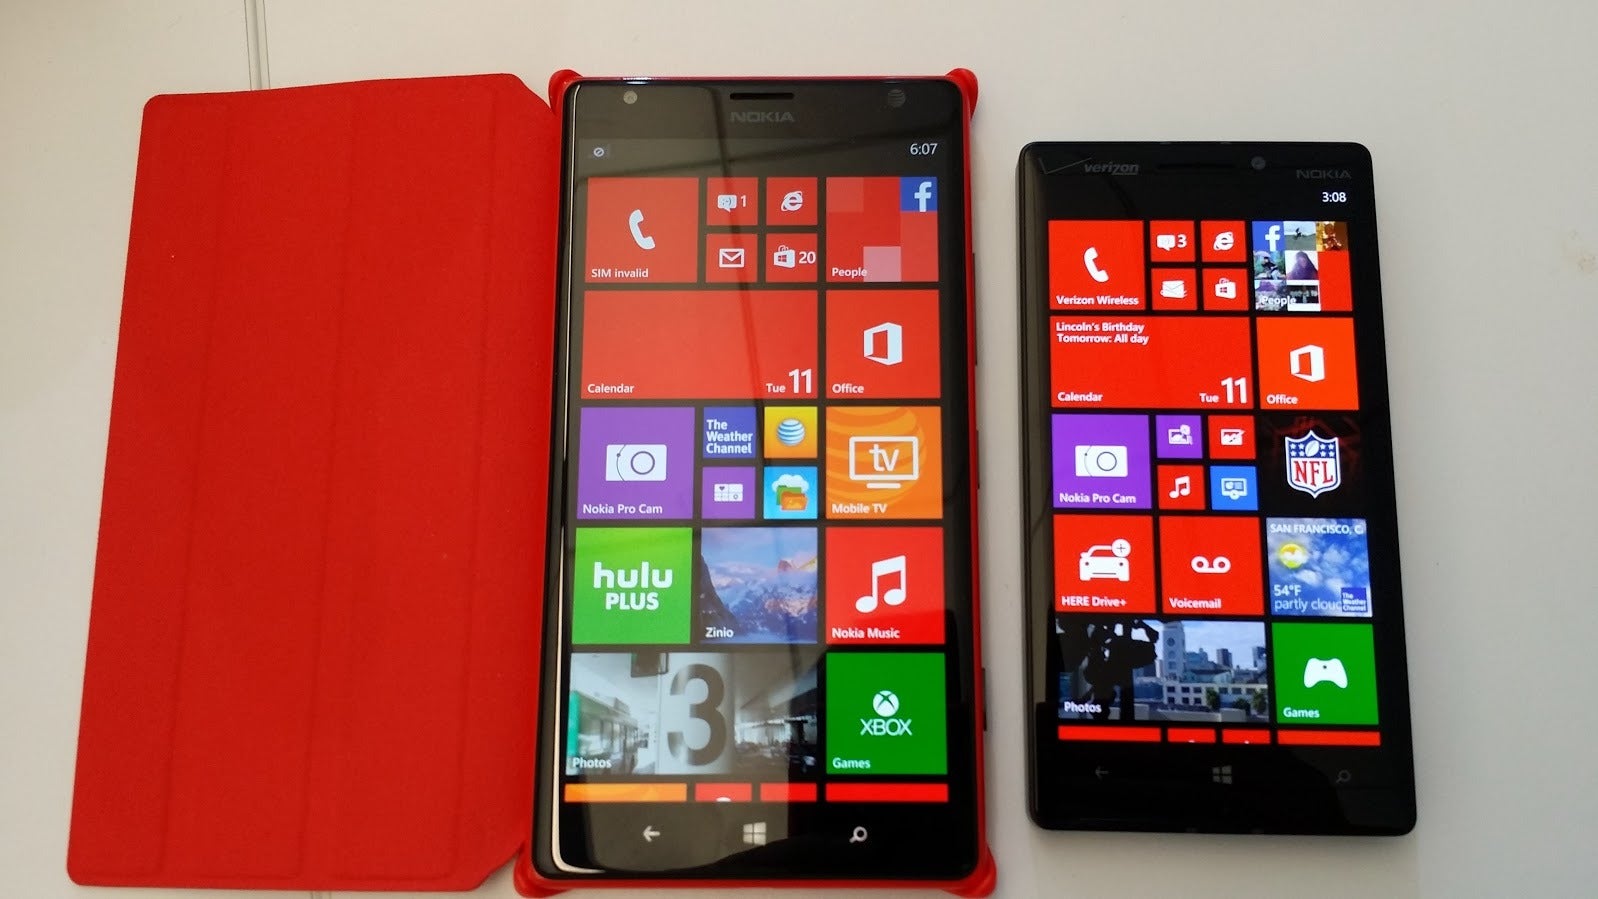 Nokia Lumia Icon review The best Windows Phone so far